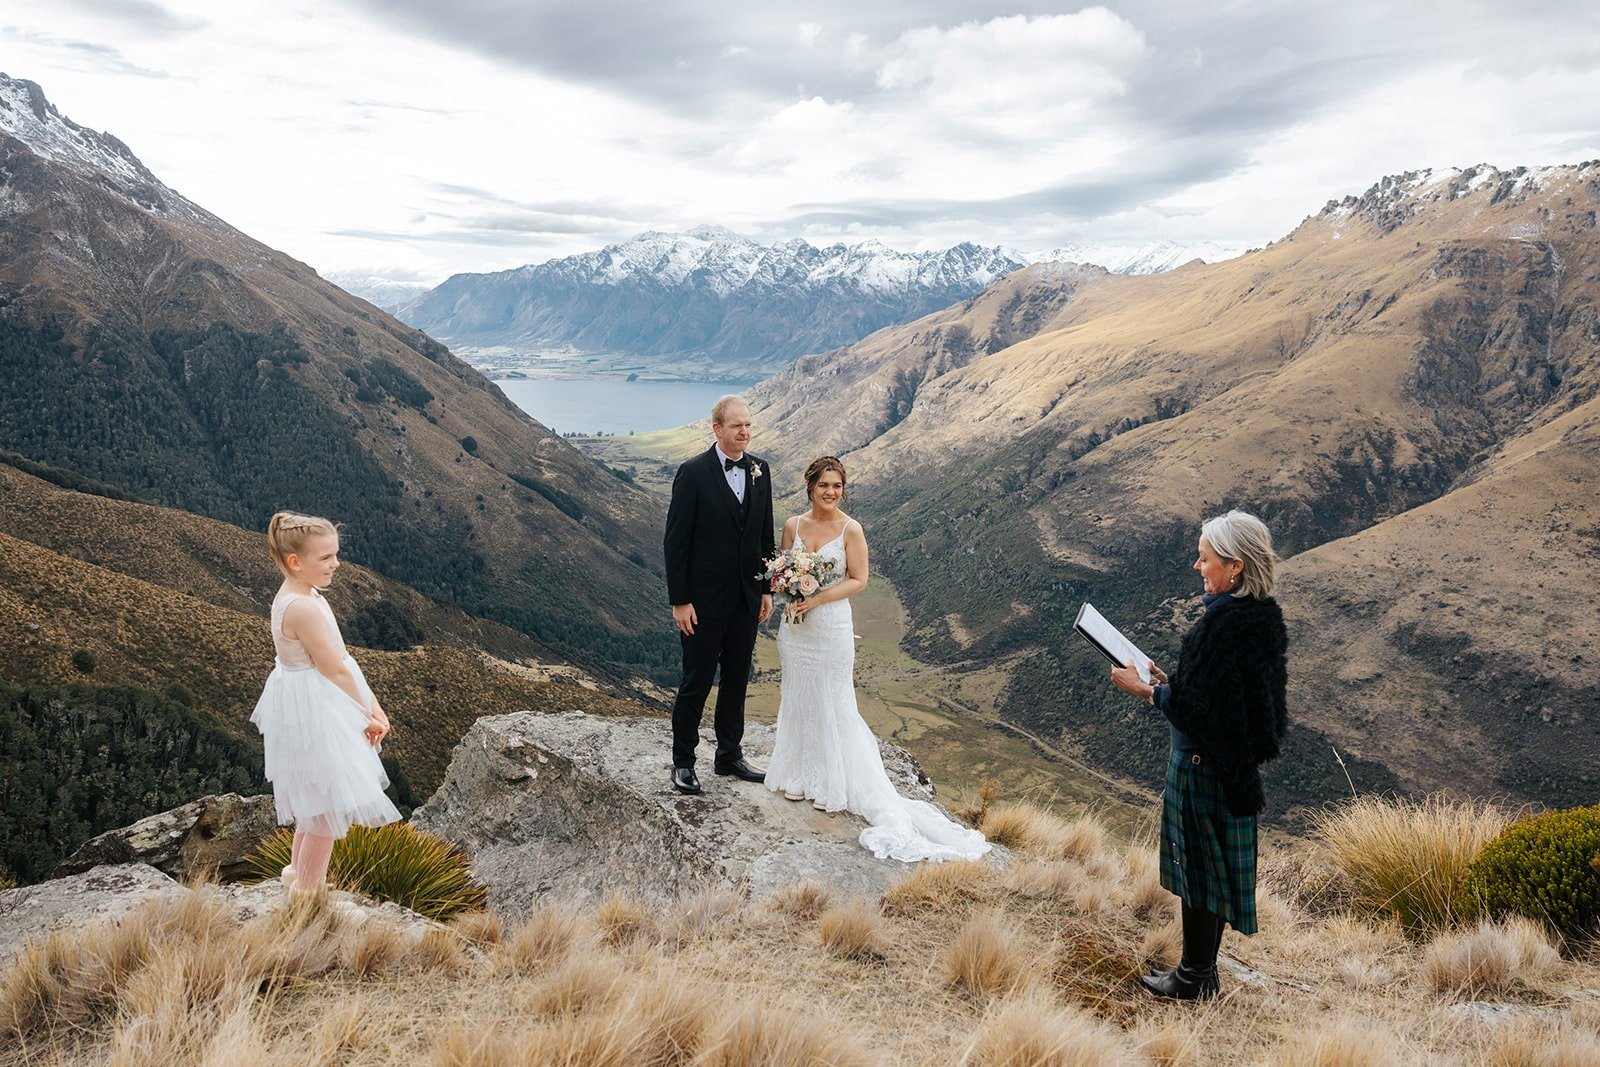 Heli Winter wedding ceremony in Queenstown New Zealand